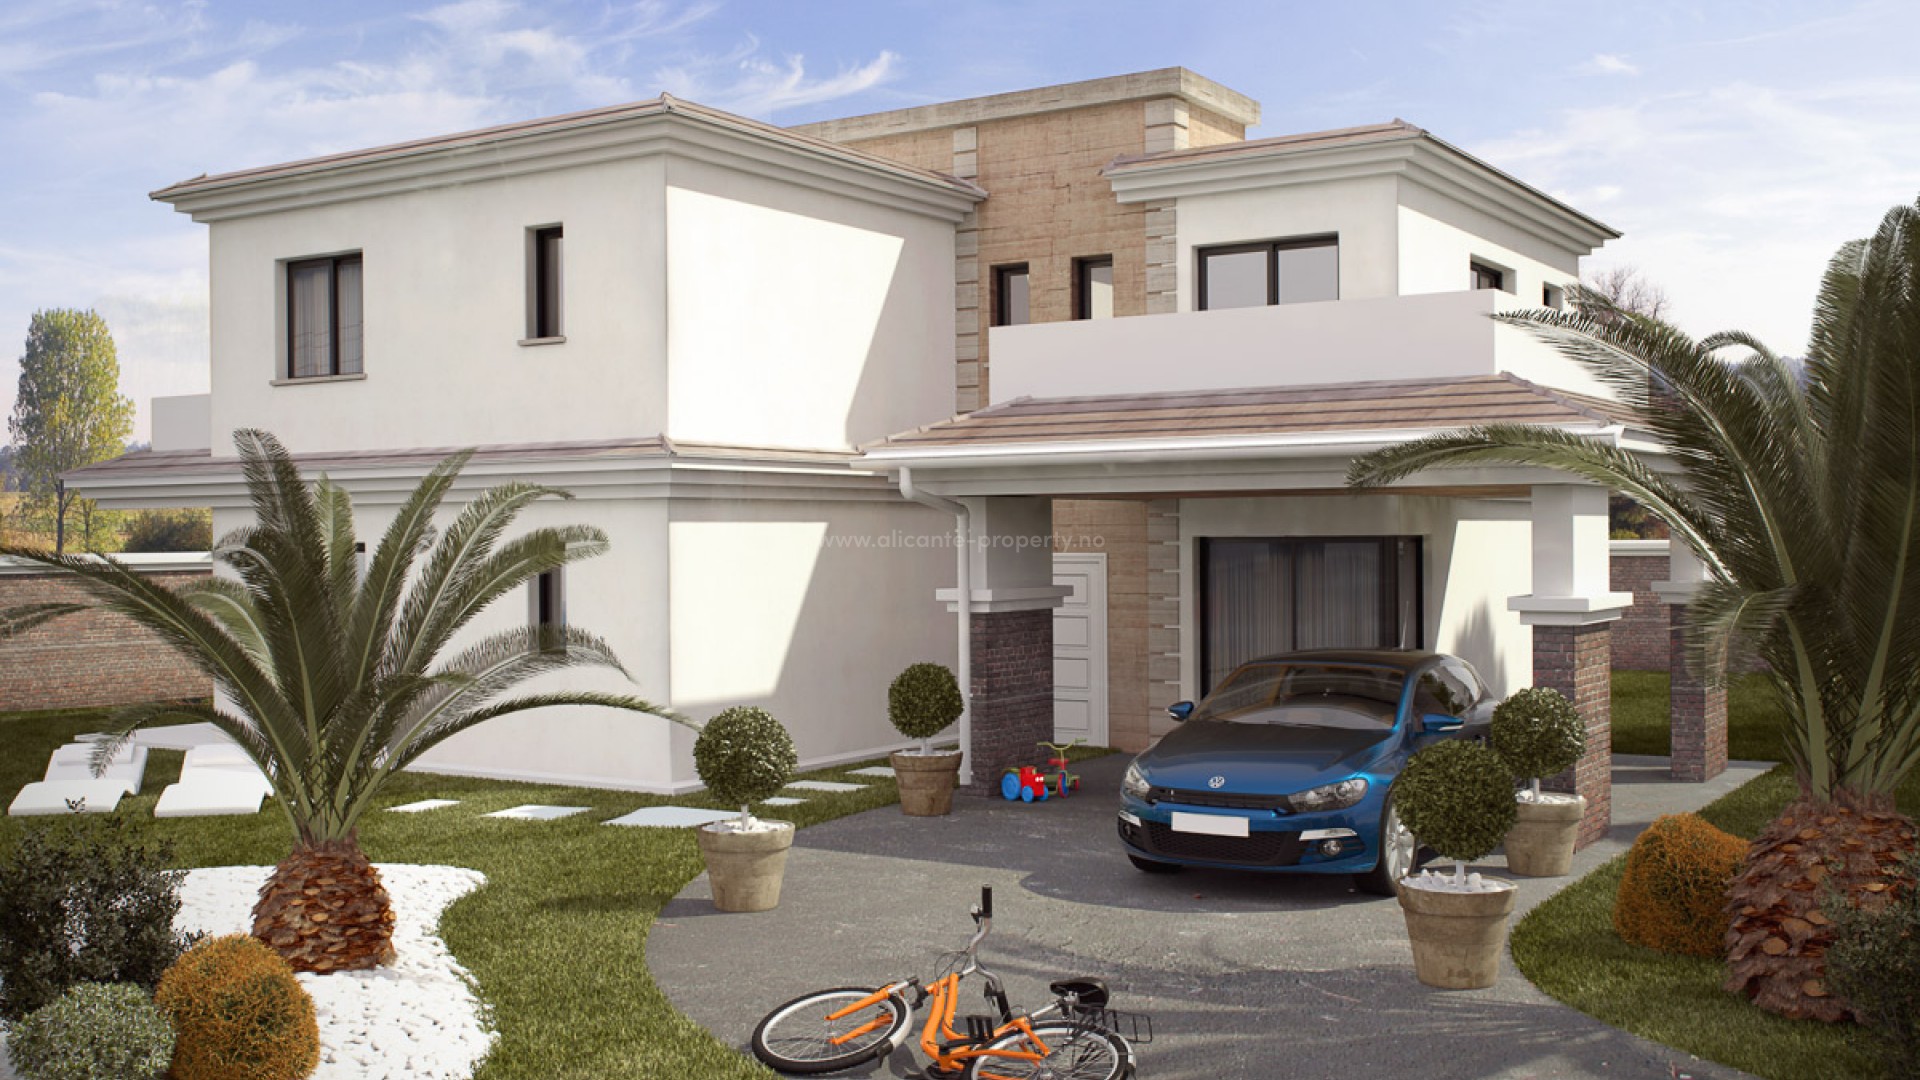 Dette er nytt hus/villa på Gran Alacant, Santa Pola på 212 kvm. 4 soverom, 3 bad, stor stua og kjøkken. Basseng/pool og egen parkeringsplass. Strand 2 km.